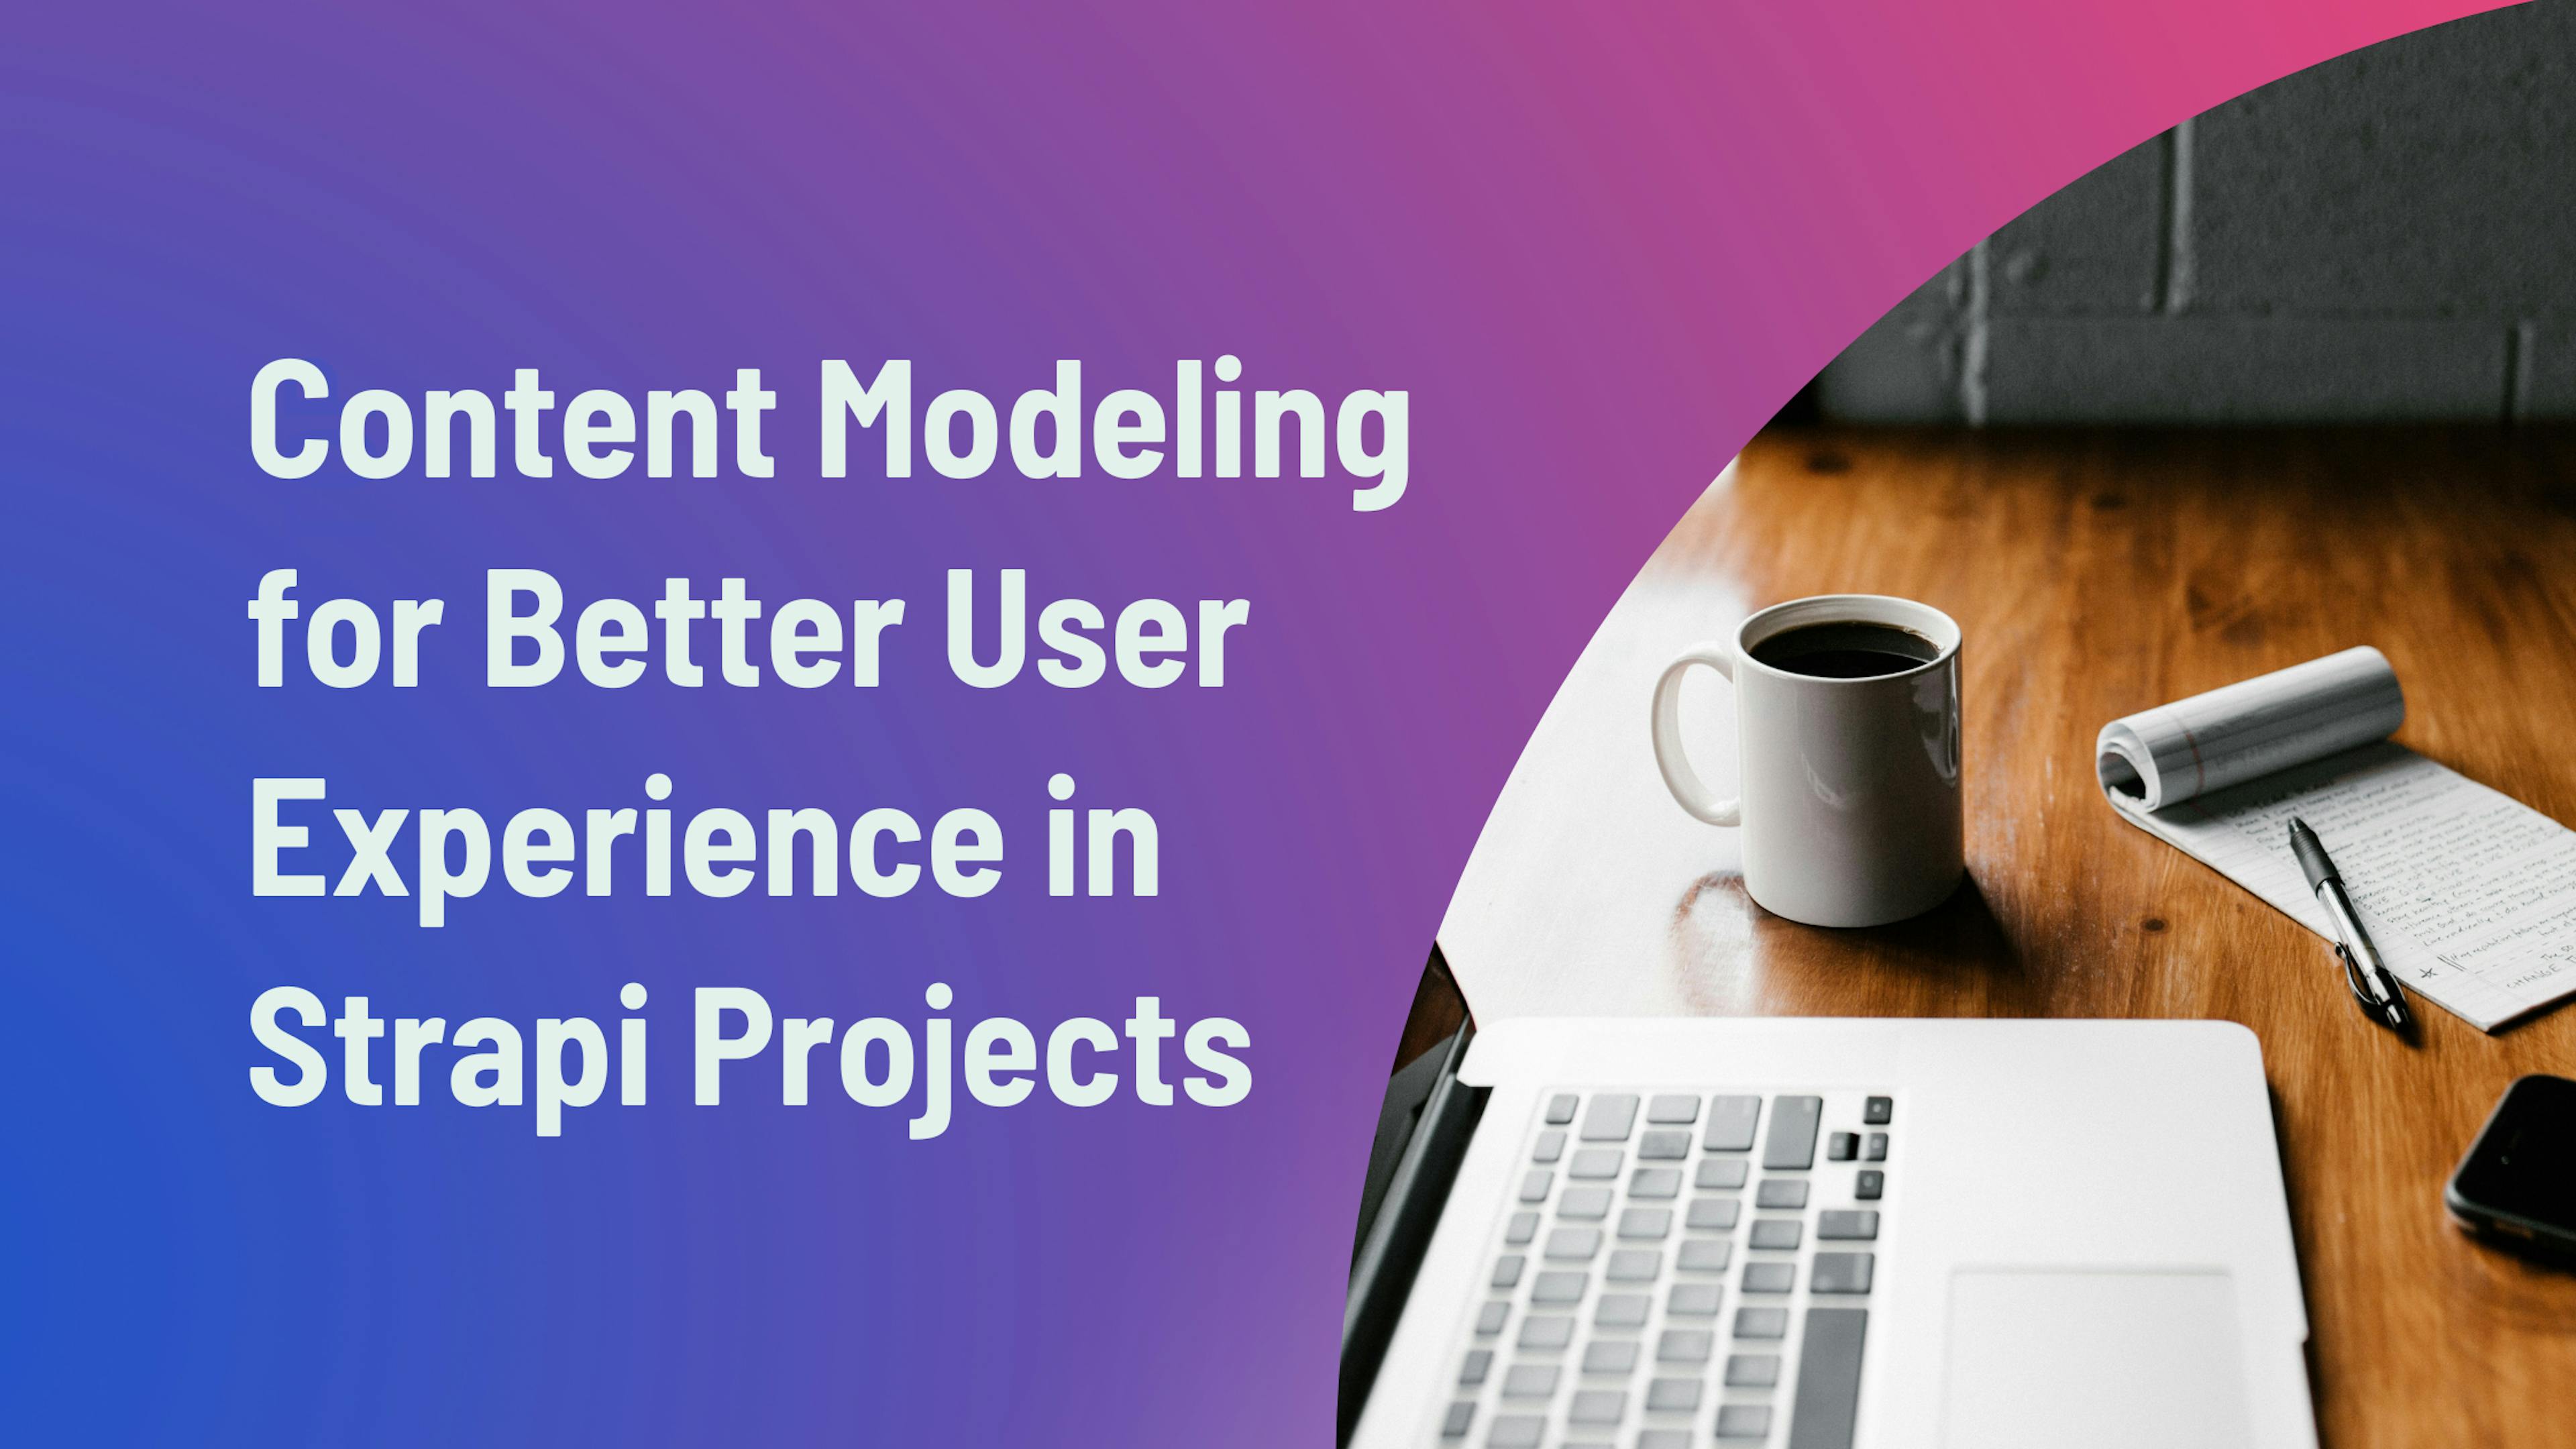 featured image - Strapi 프로젝트에서 더 나은 사용자 경험을 위한 콘텐츠 모델링